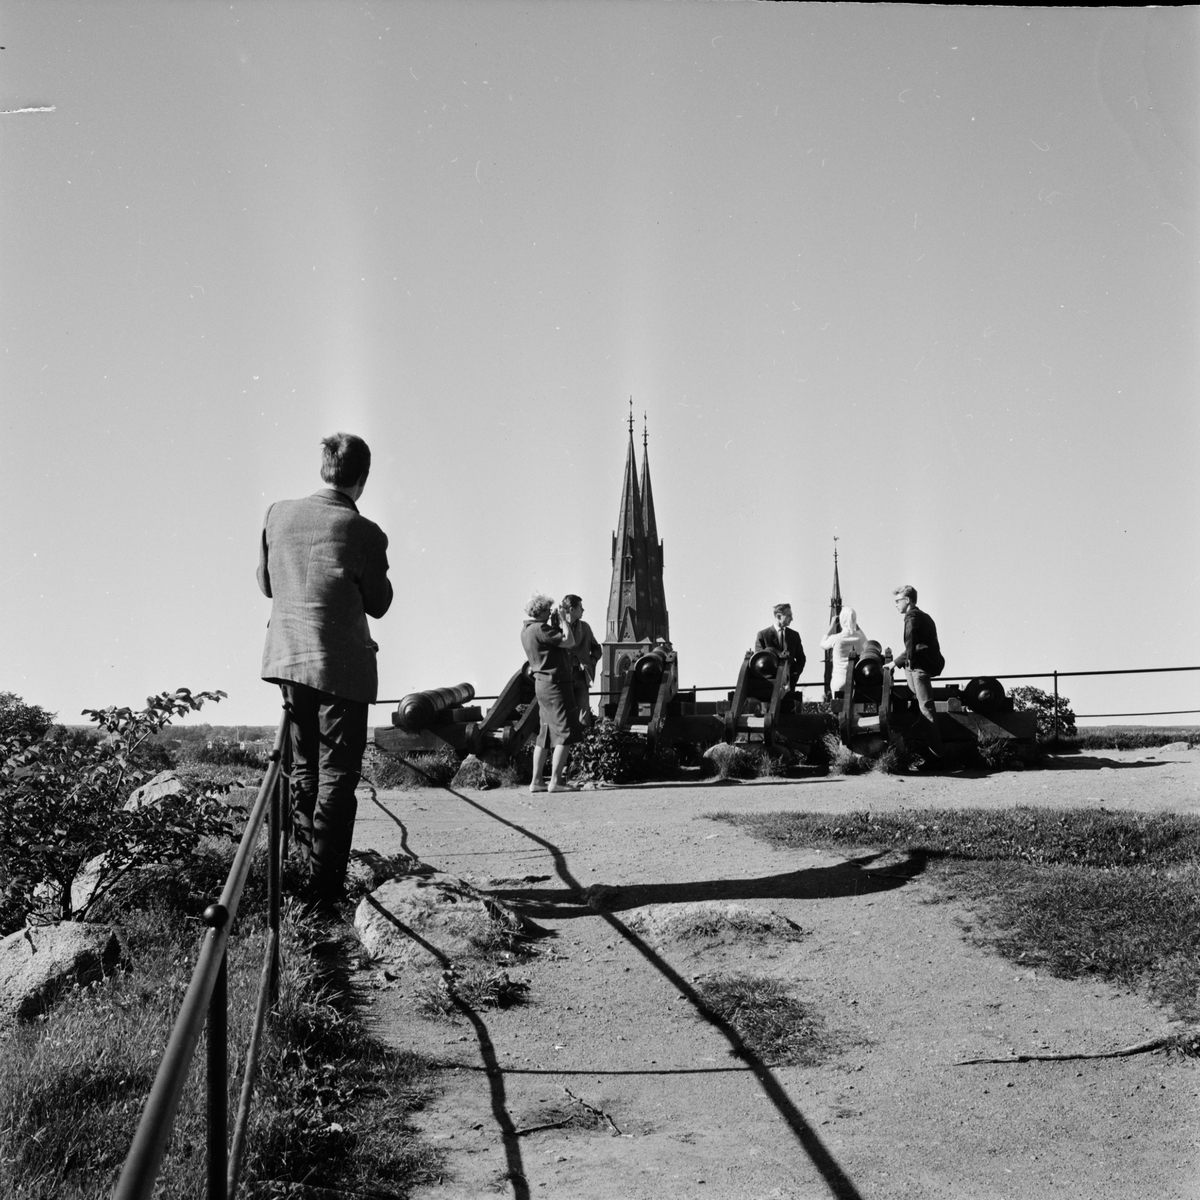 "Turistinvasion", Slottsbacken, Uppsala 1963